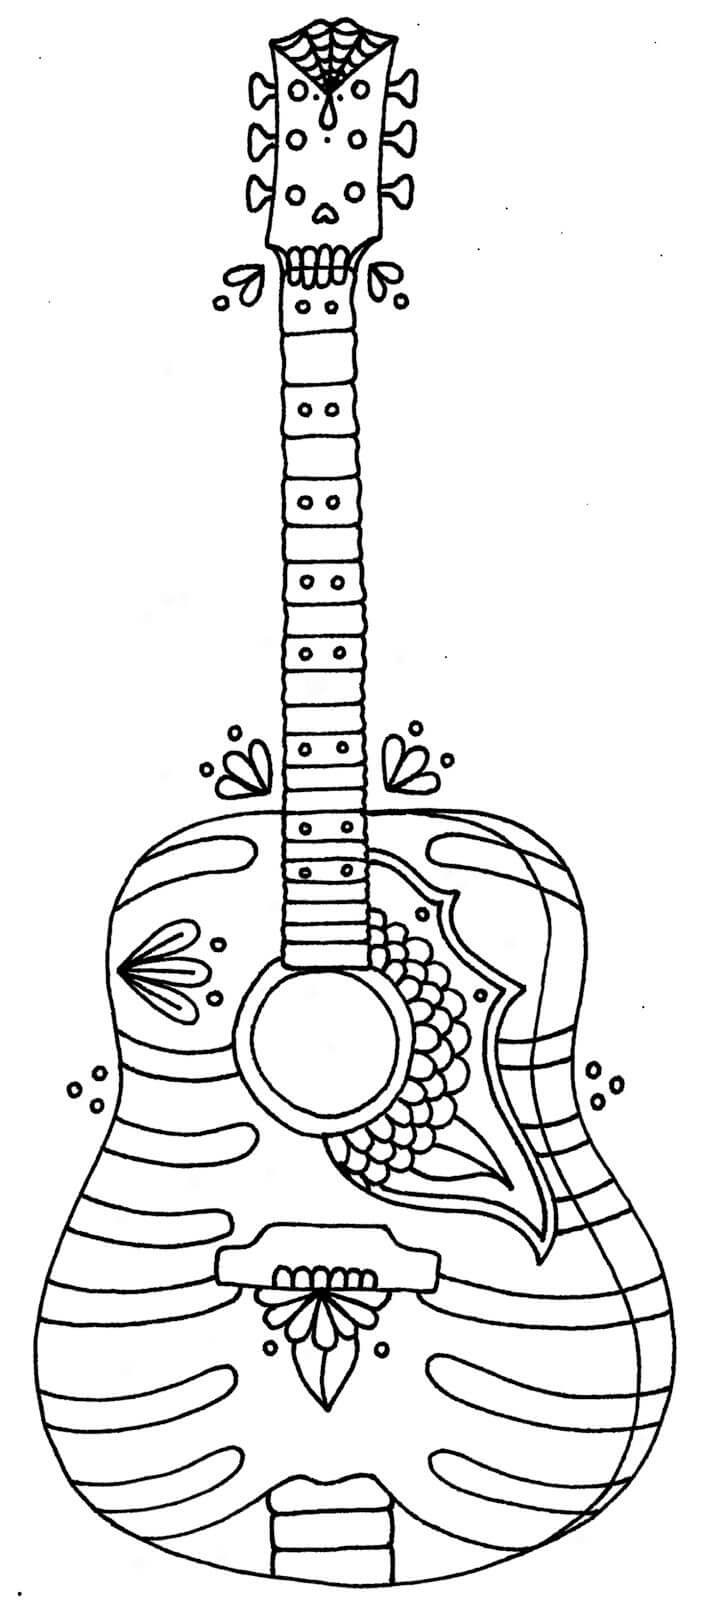 Guitarra de Verano